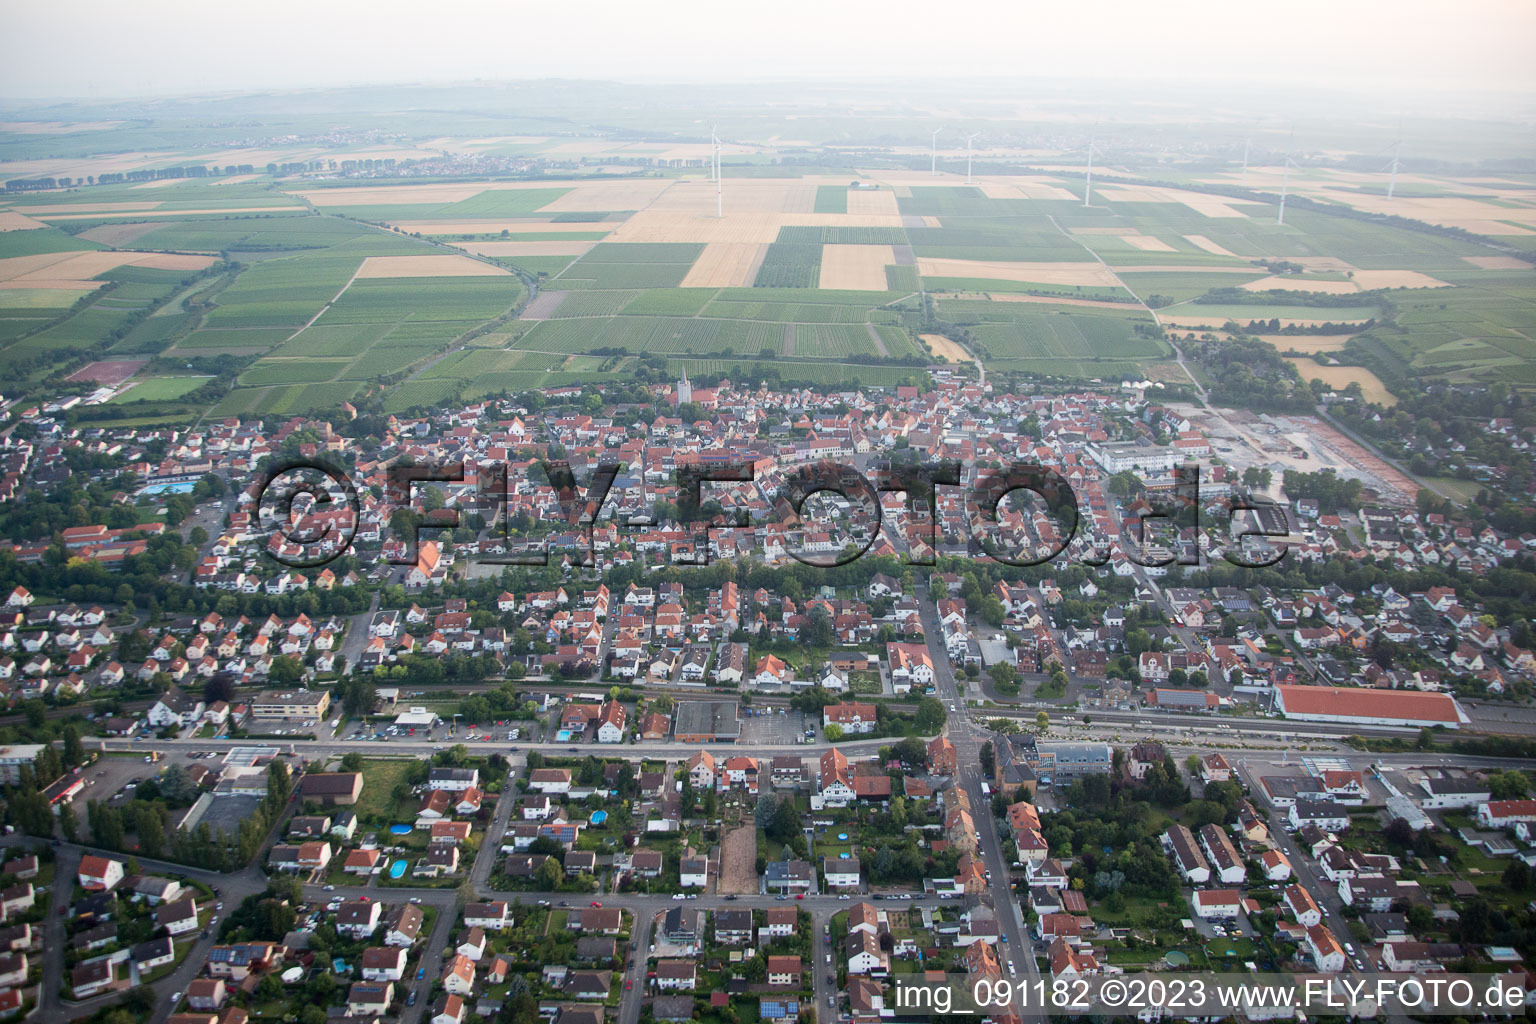 Luftbild von Ortsteil Pfeddersheim in Worms im Bundesland Rheinland-Pfalz, Deutschland